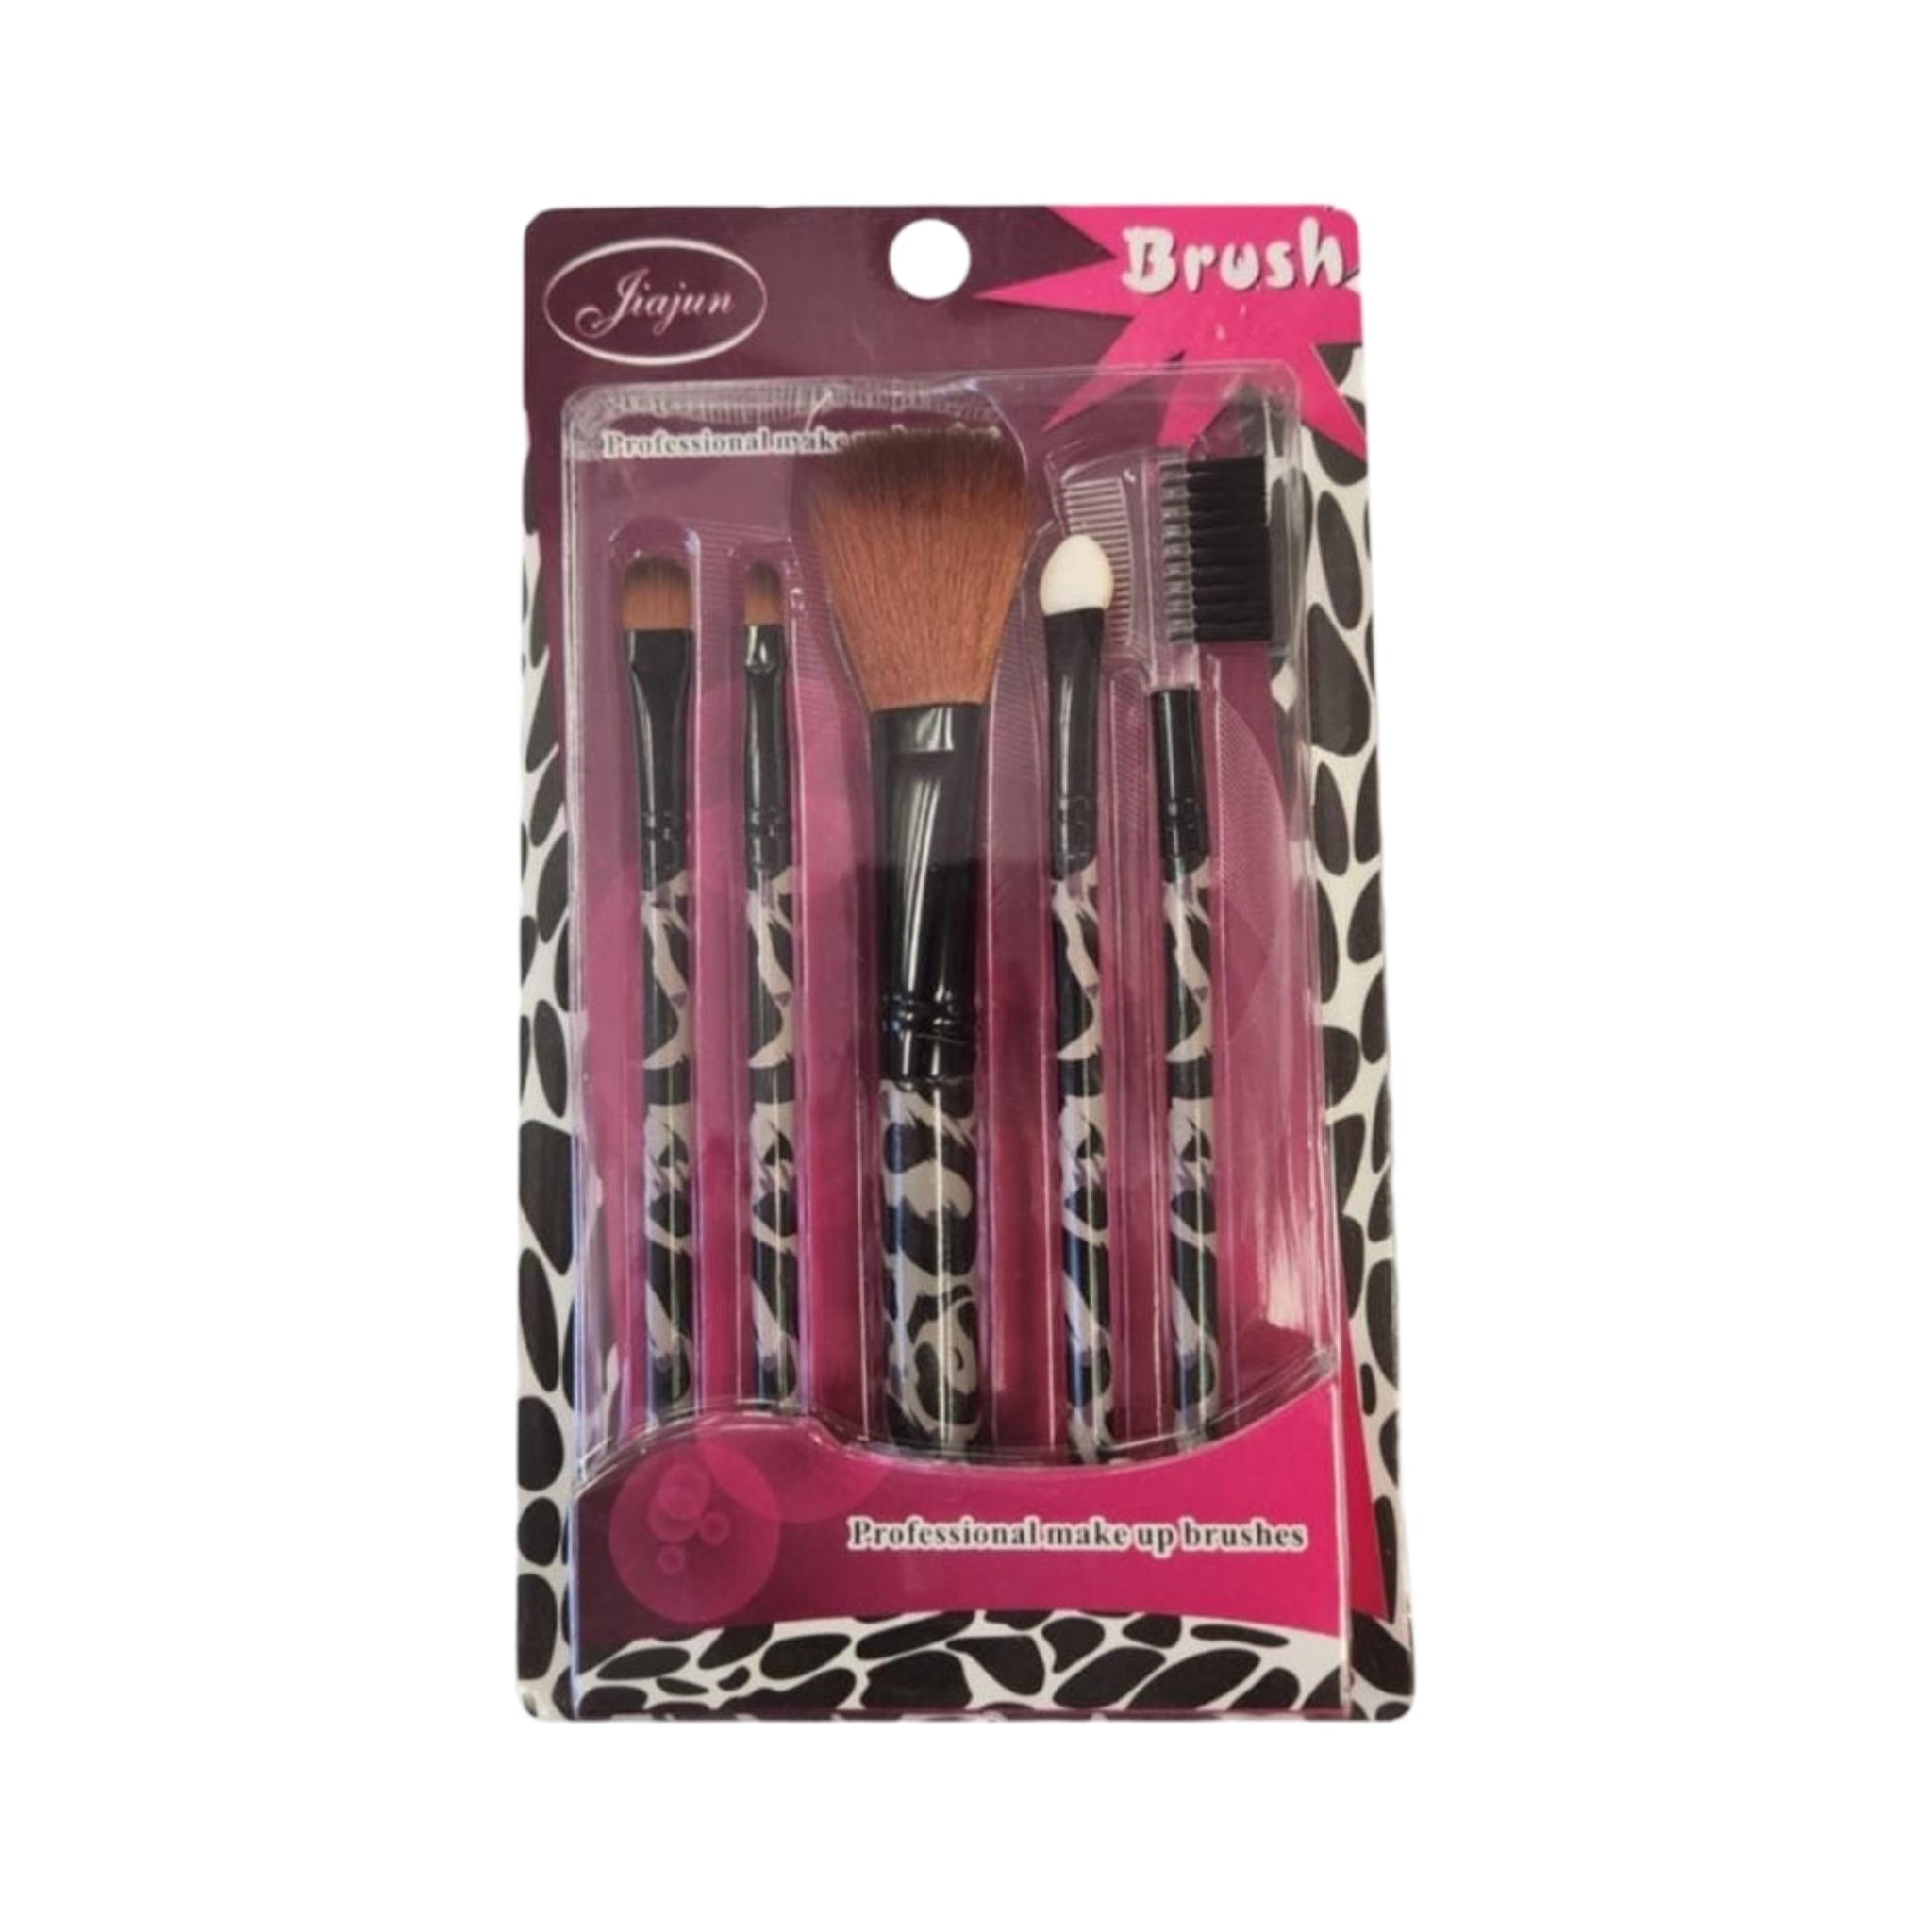 5 Pieces Professional Makeup Brush set